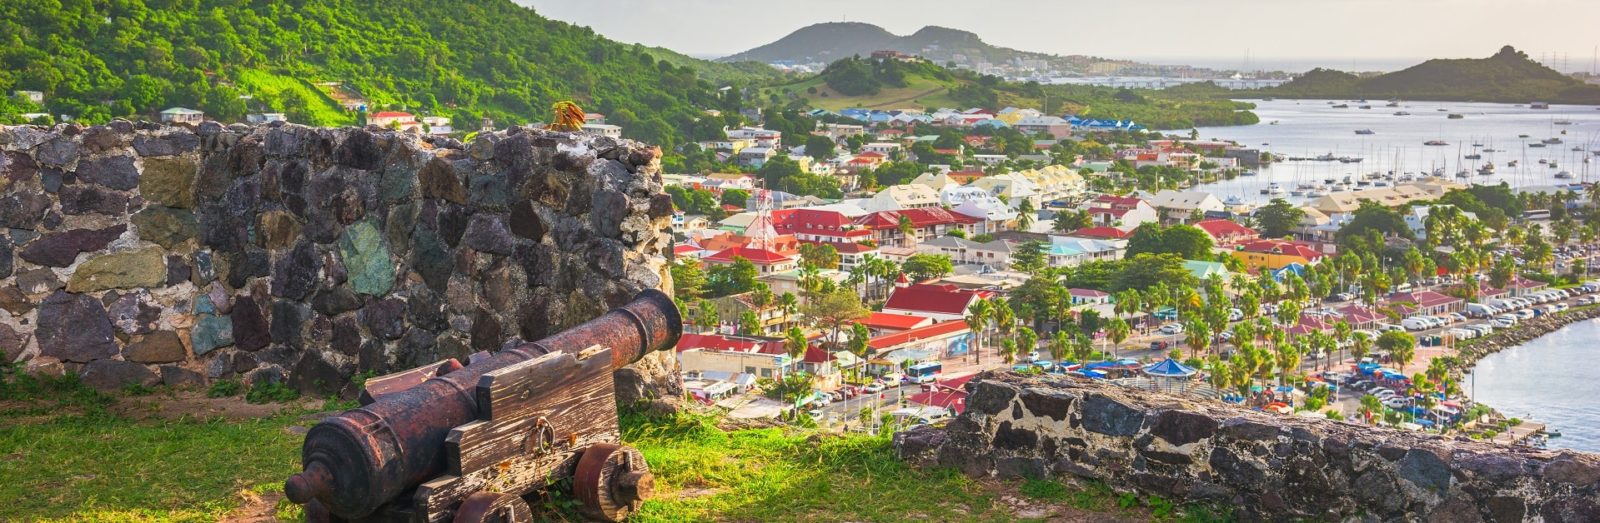 Landausflüge Philipsburg (St. Maarten)